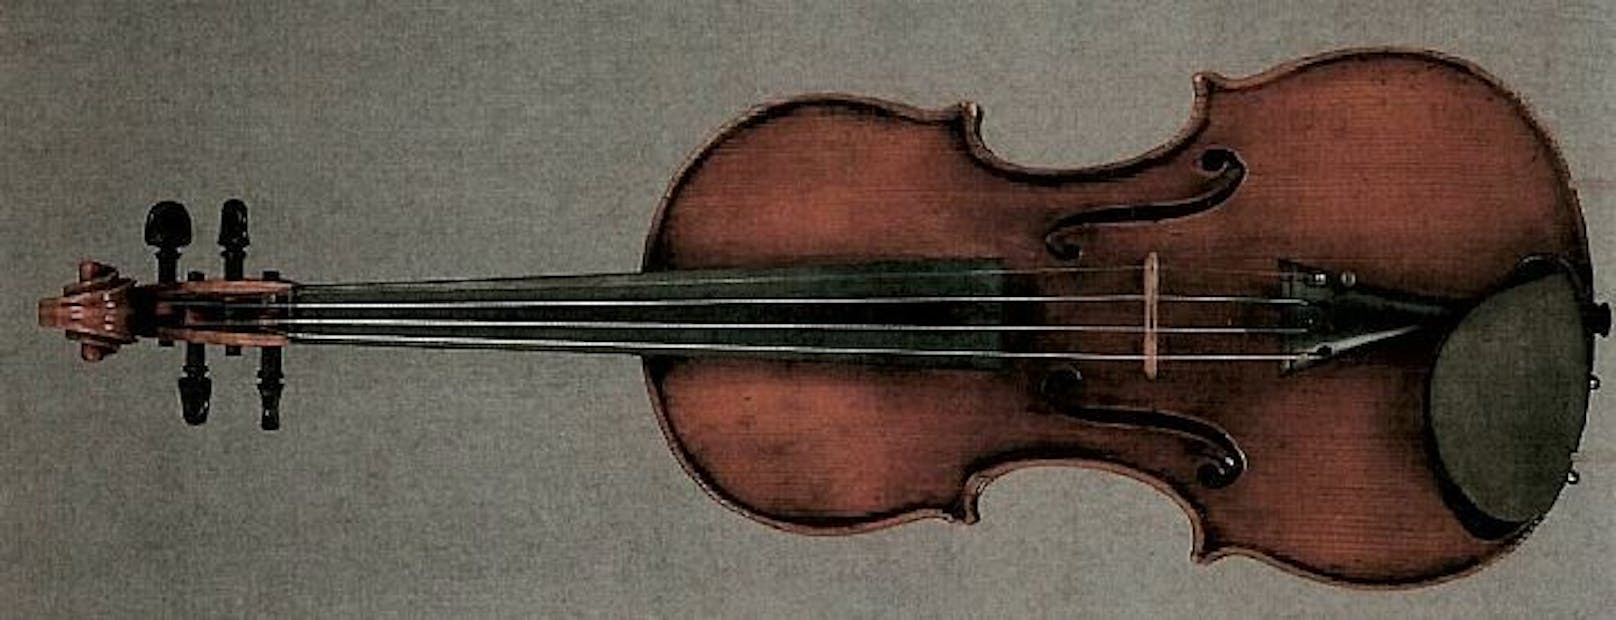 80.000€ Geige vergessen! Frau bietet 2.500€ Finderlohn